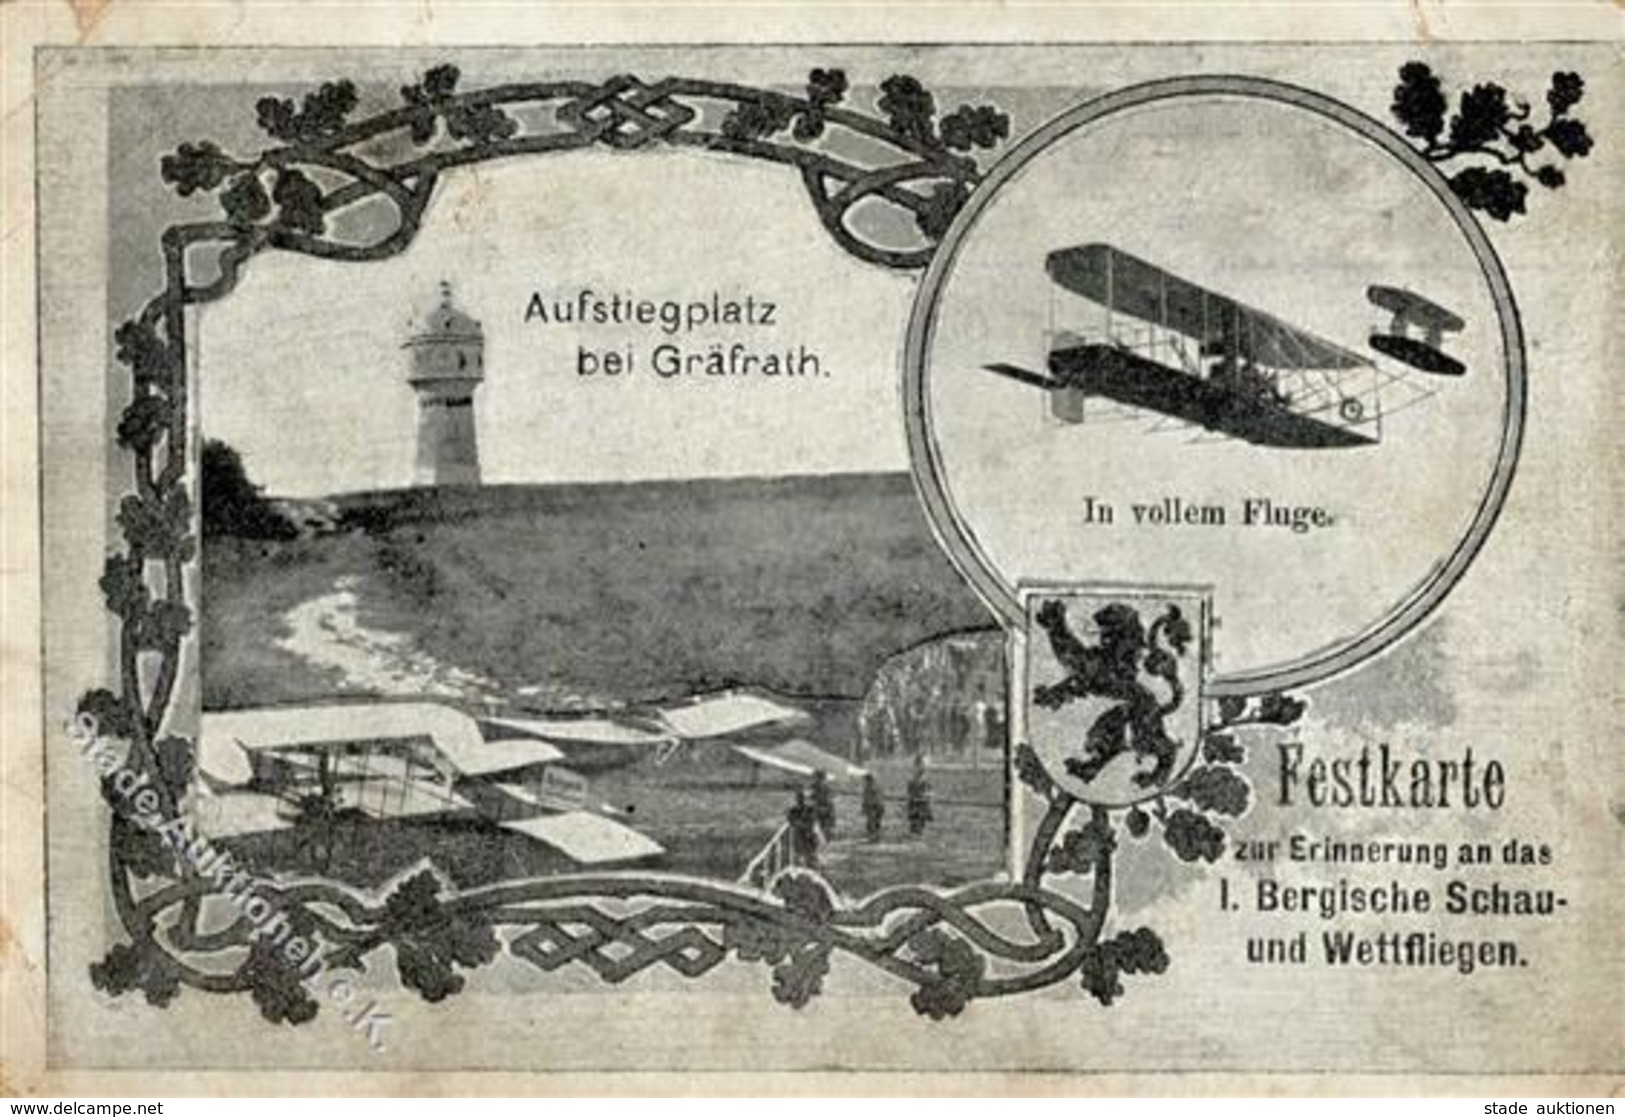 GRÄFRATH - Festkarte Erinnerung An Das I.BERGISCHE SCHAU- Und WETTFLIEGEN 1911 (o Vohwinkel 28.9.11), Sehr Selten !!! Ec - Airmen, Fliers